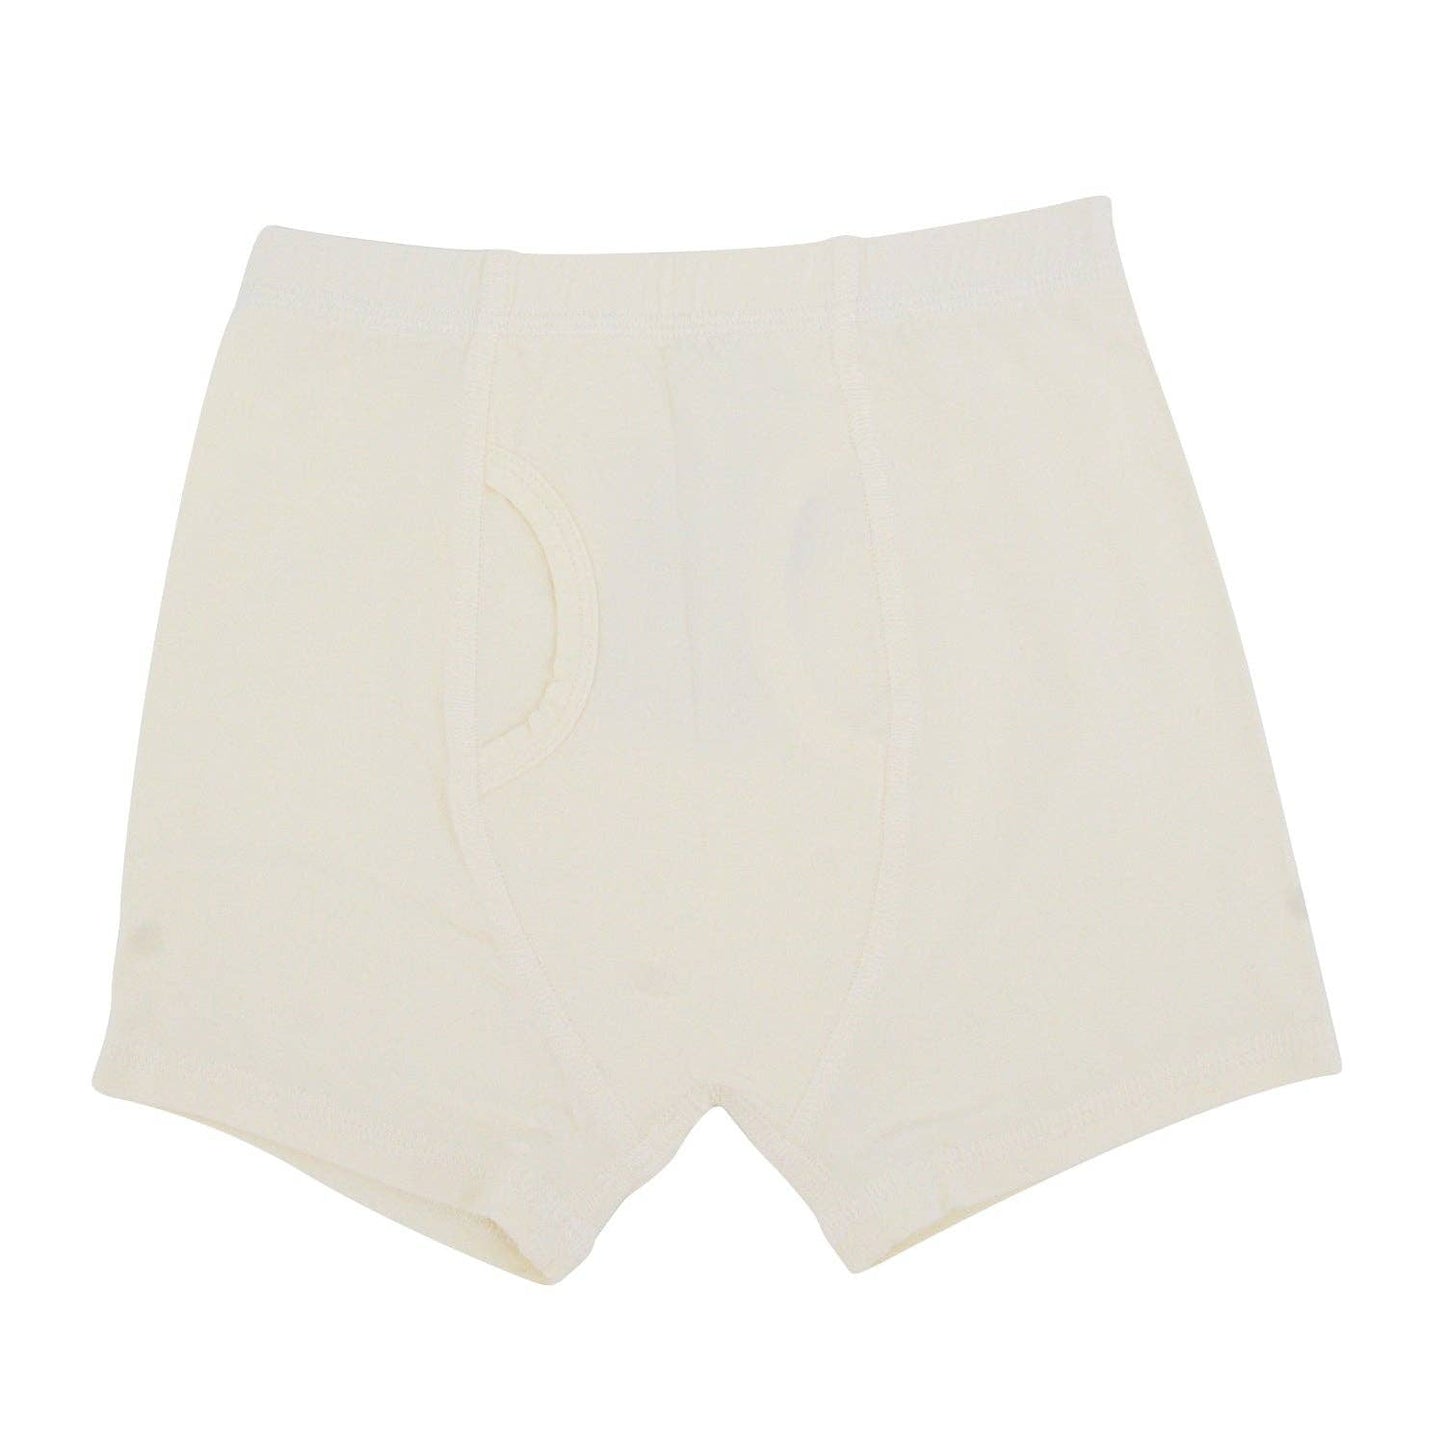 Boy's Underwear - Whispery White